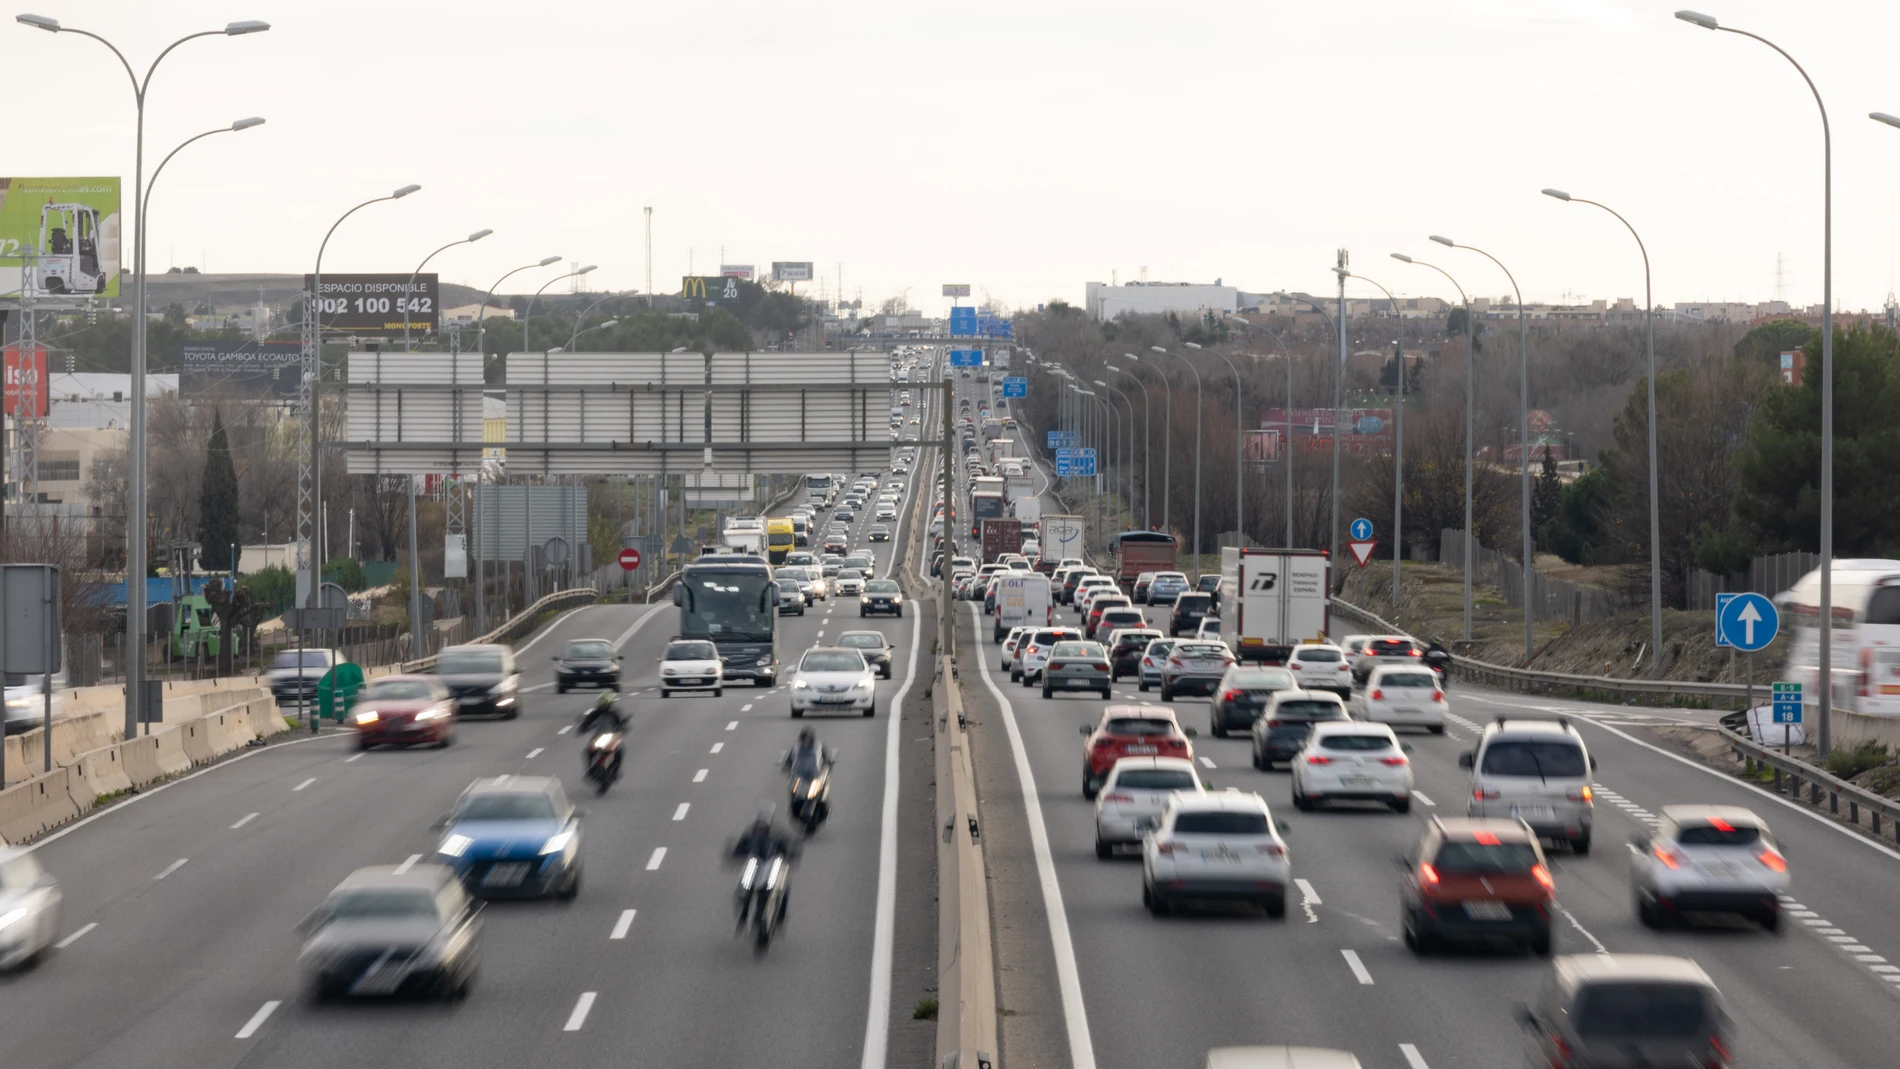 El 62% de los coches en España tiene más de 10 años y son un "riesgo para la seguridad", según Carfax